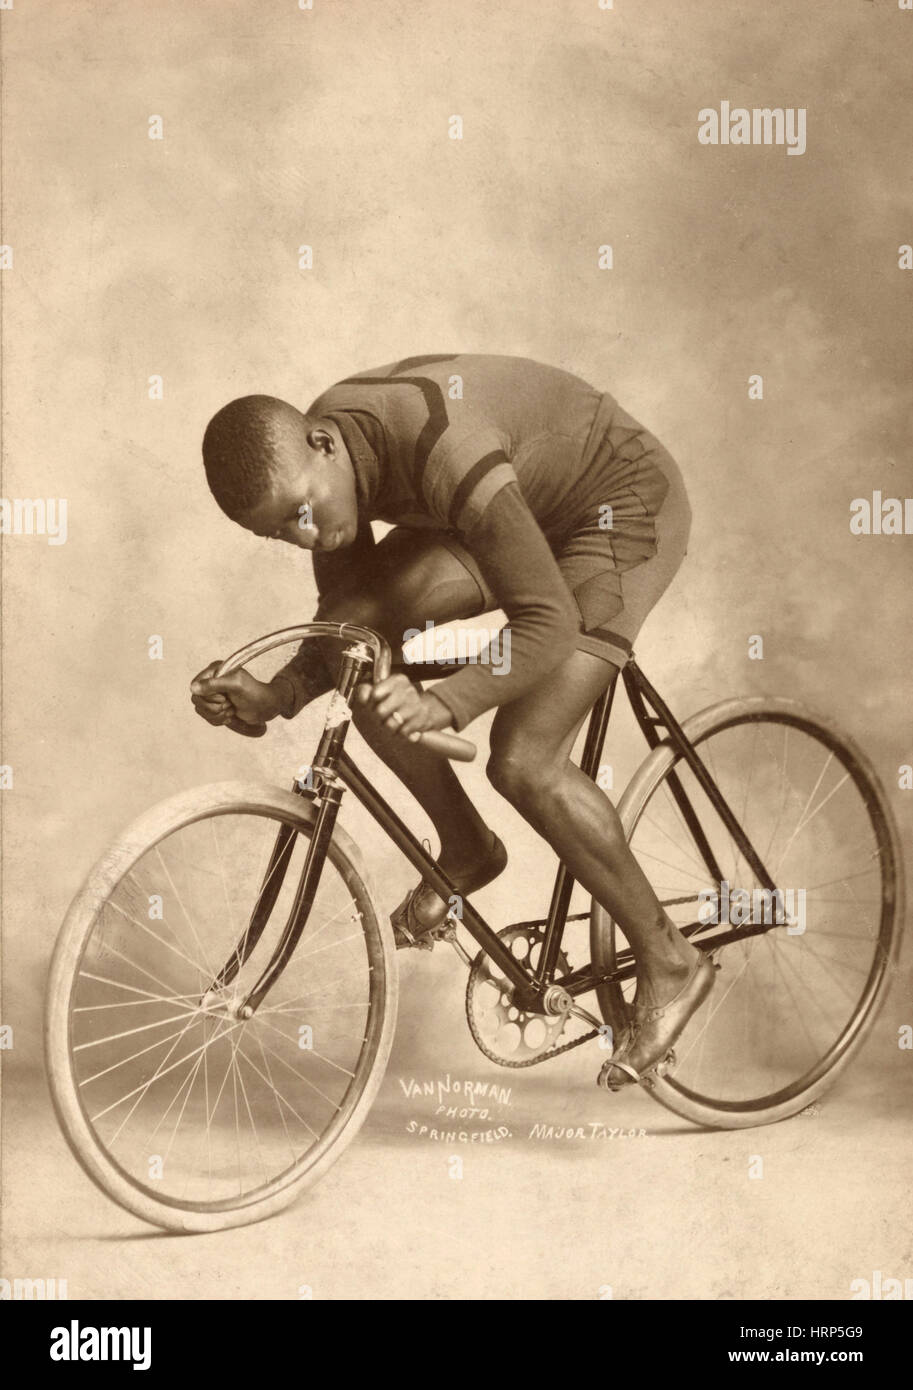 Marshall Taylor, Campeón del Mundo ciclista Foto de stock